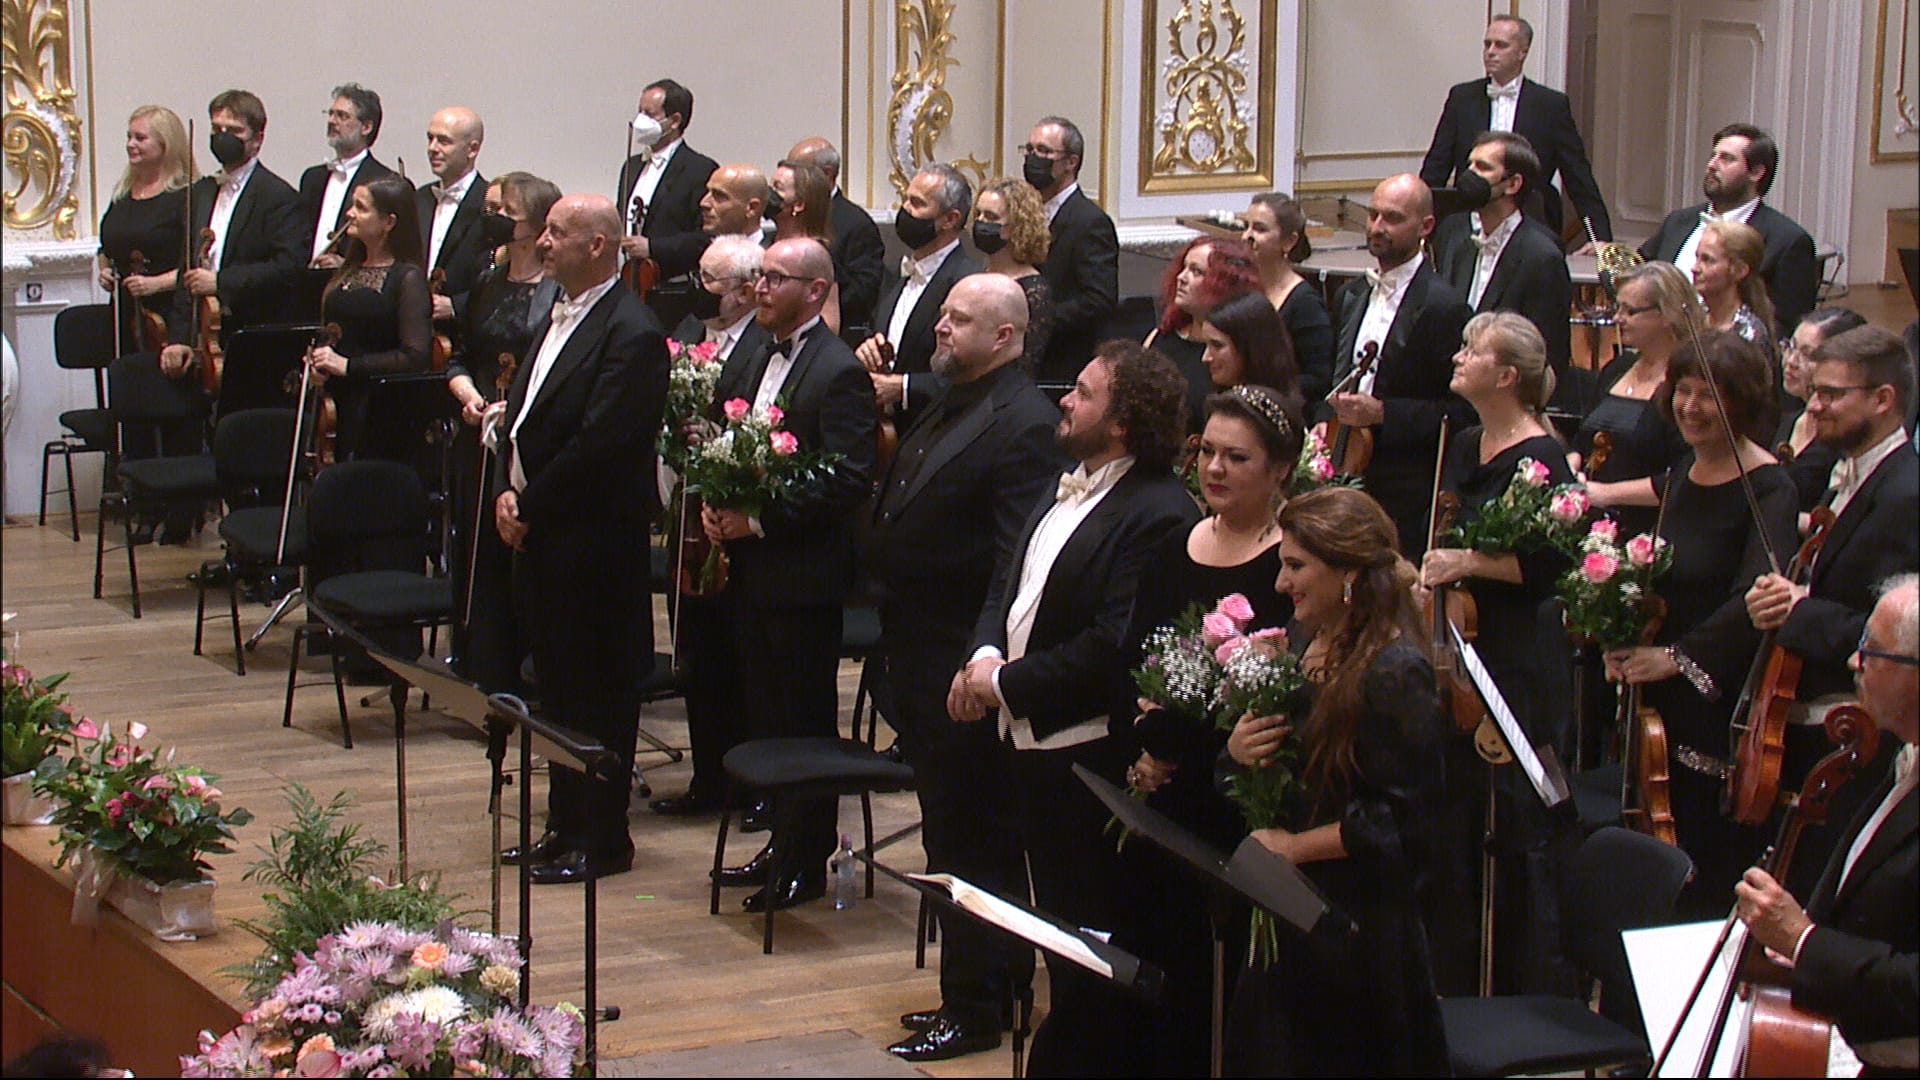 Giuseppe Verdi – Messa da Requiem